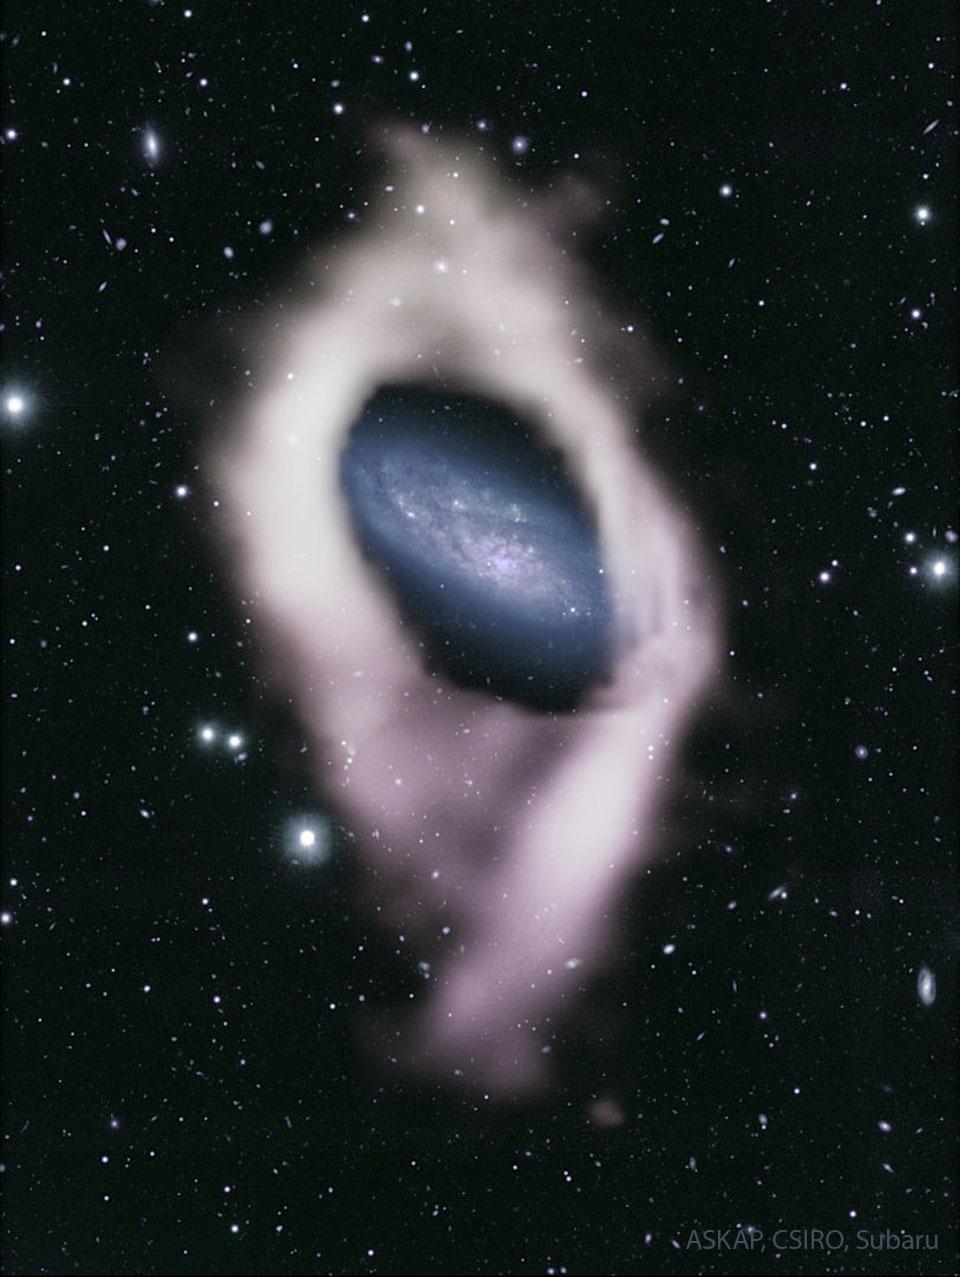 مجرّة بأذرع حلزونيّة زرقاء تُرى في المركز بين العديد من نجوم المقدّمة. هذه المجرّة مُحاطة بغلافٍ أبيض، اكتُشِفَ أنّه غاز هيدروجين.